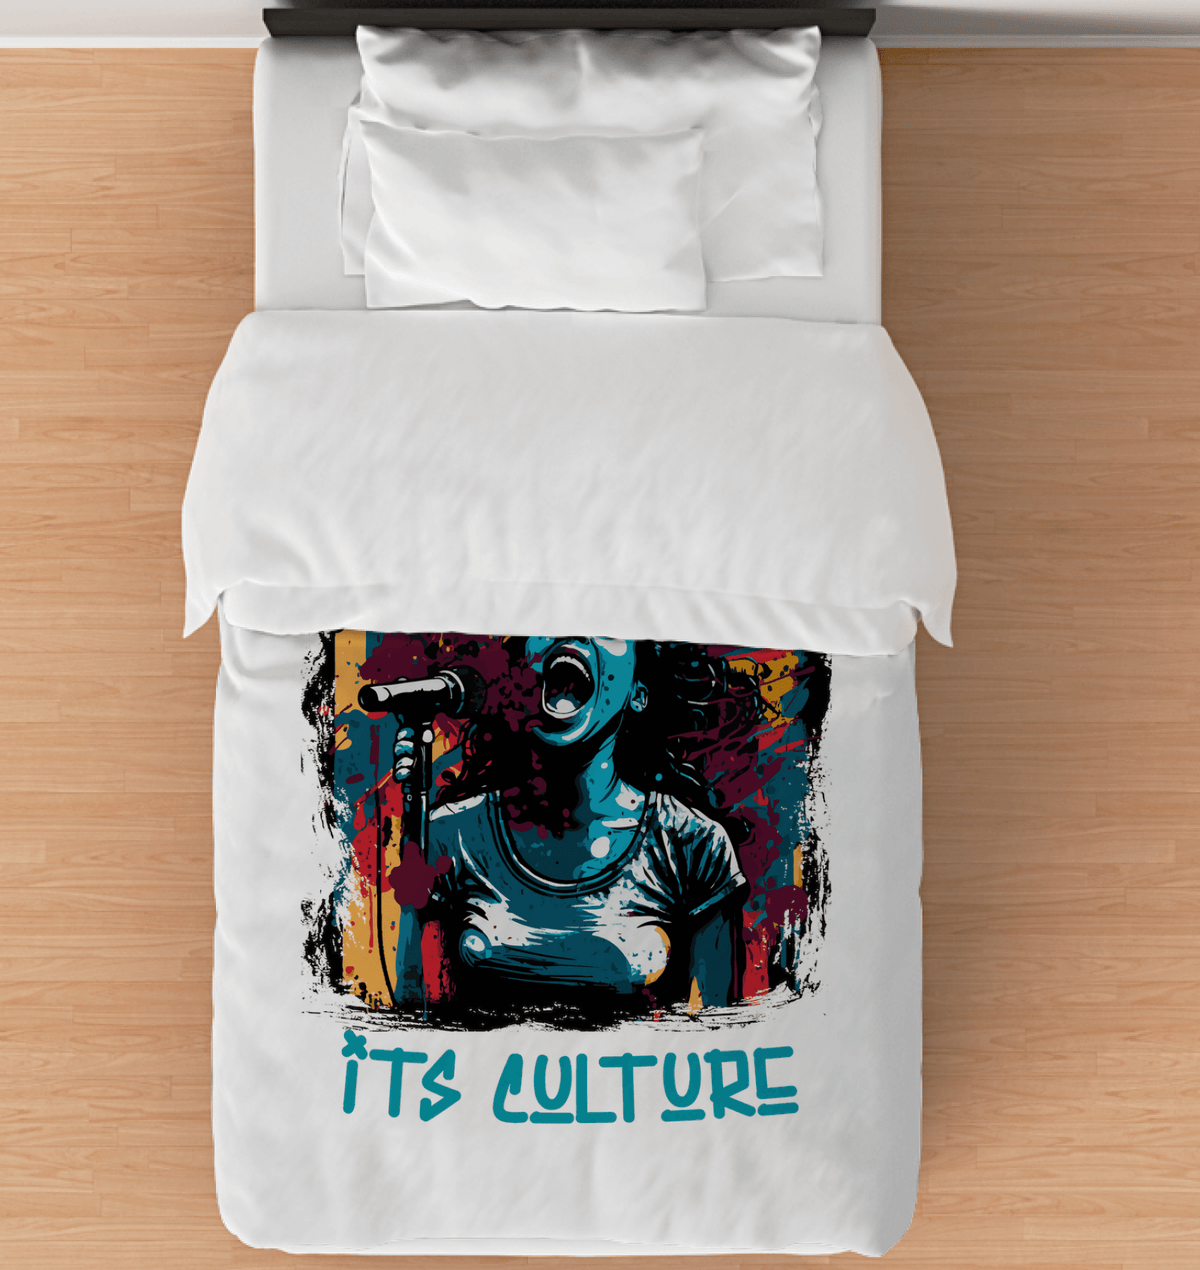 It's Culture Duvet Cover - Beyond T-shirts